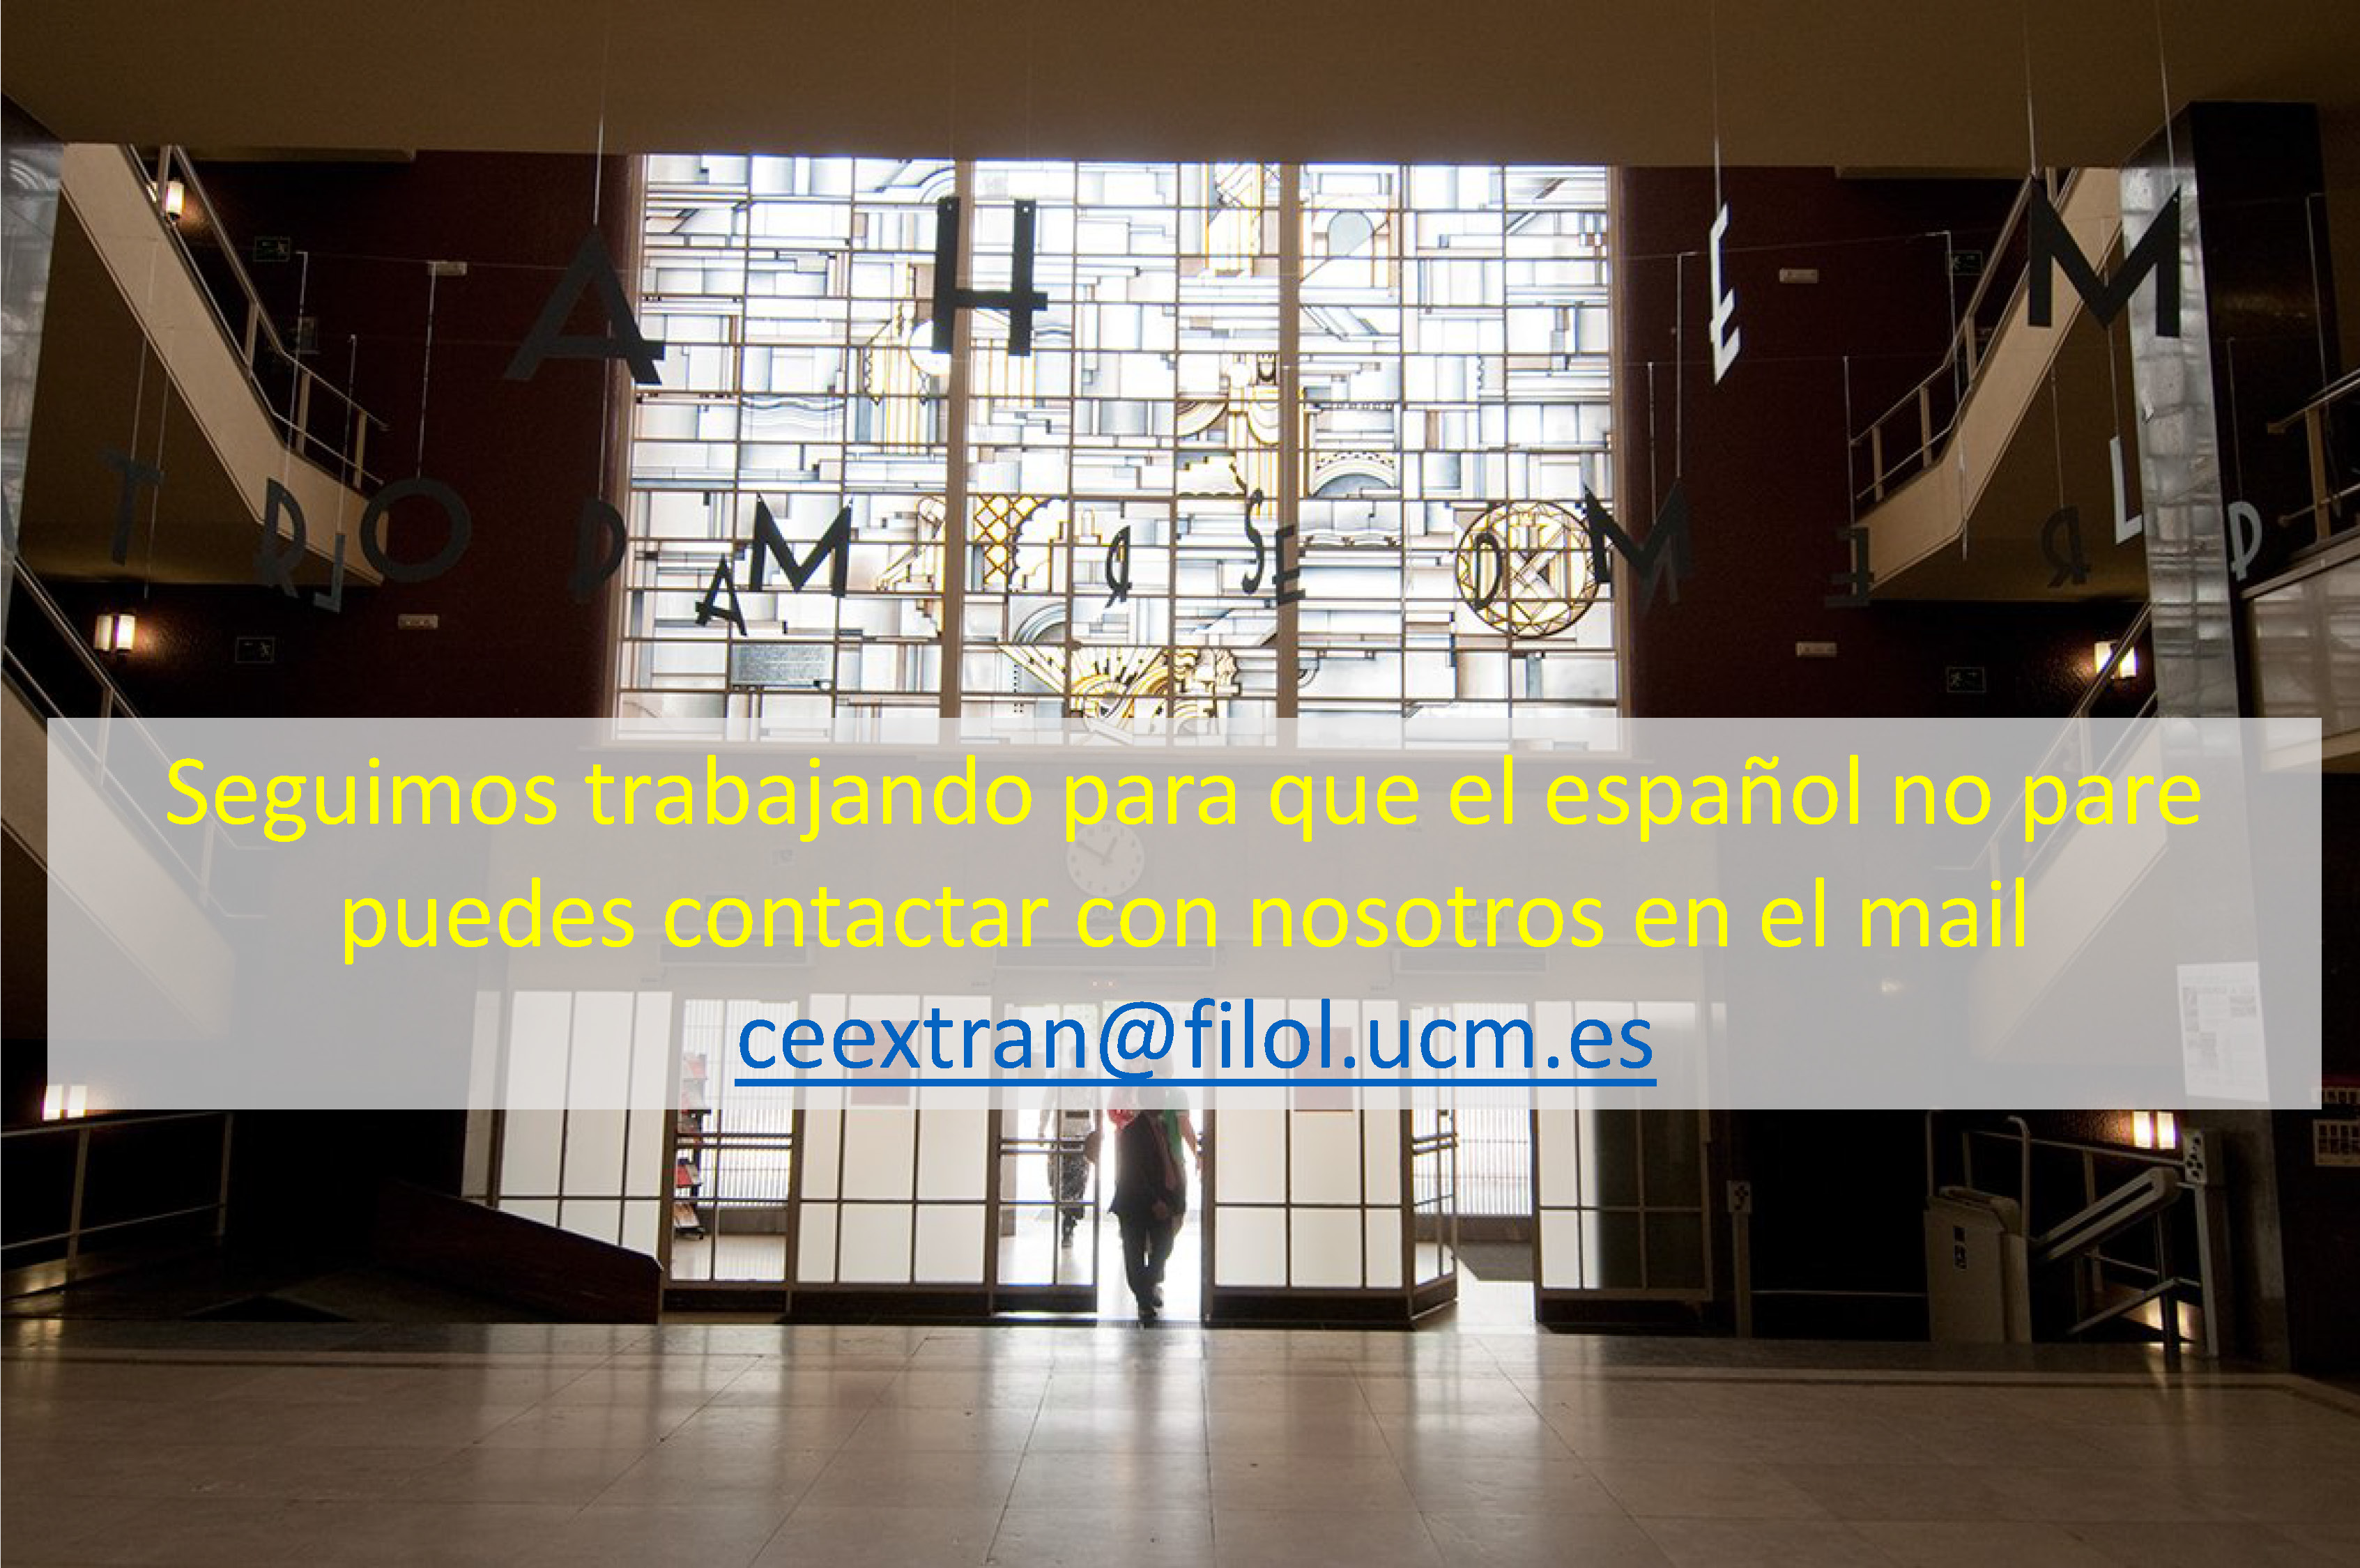 Seguimos trabajando para que el español no pare. Puedes contactar con nosotros en el mail ceextran@filol.ucm.es